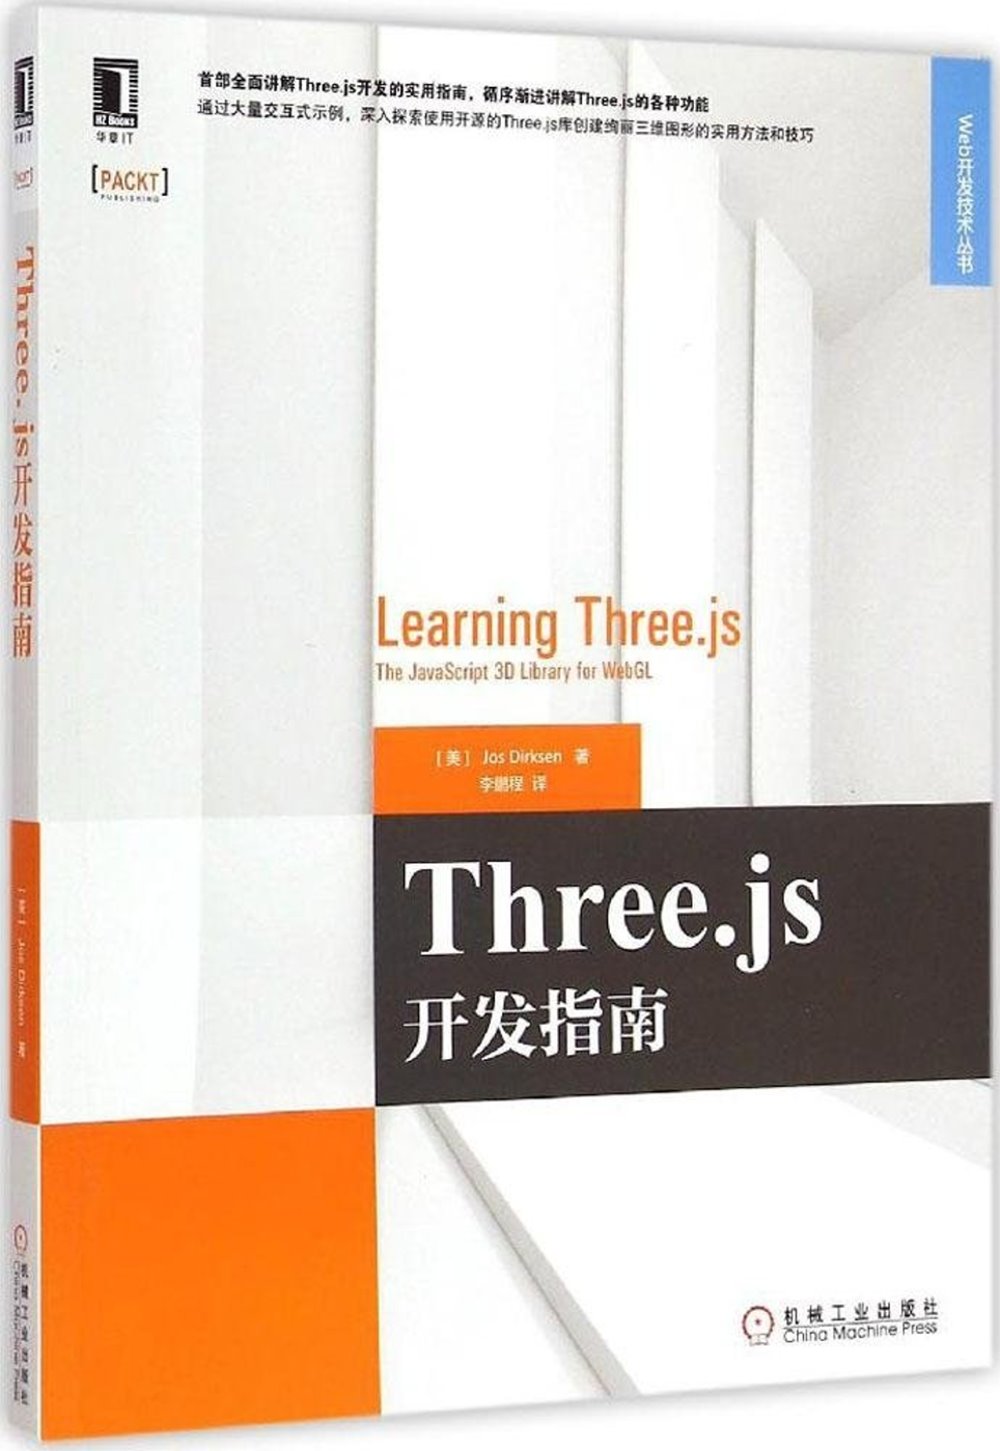 Three.js開發指南